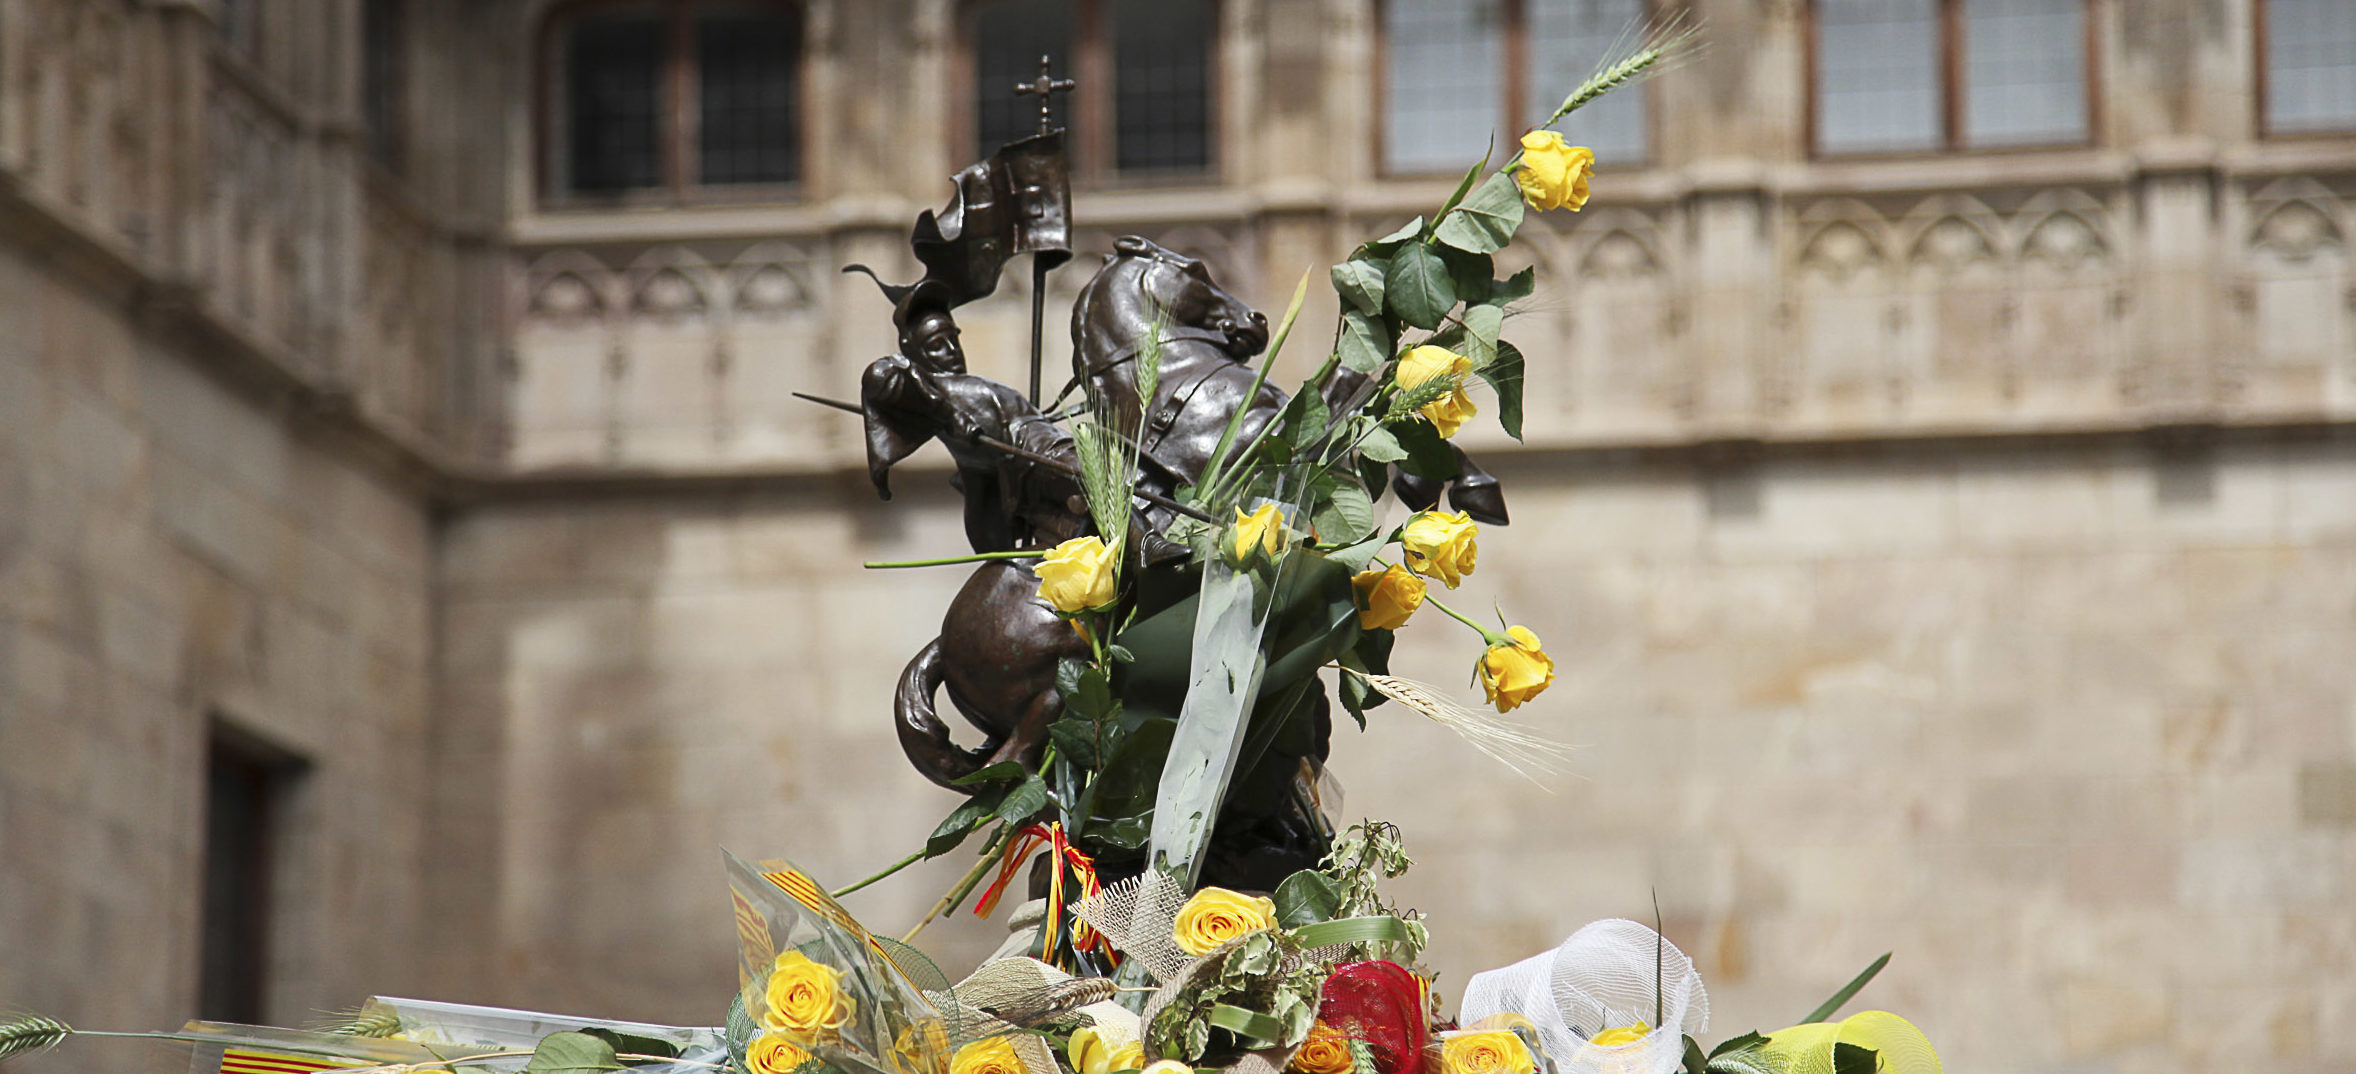 Els visitants del Palau deixen roses grogues a la figura de sant Jordi que corona la font del Pati dels Tarongers (fotografia: Elisabeth Magre)